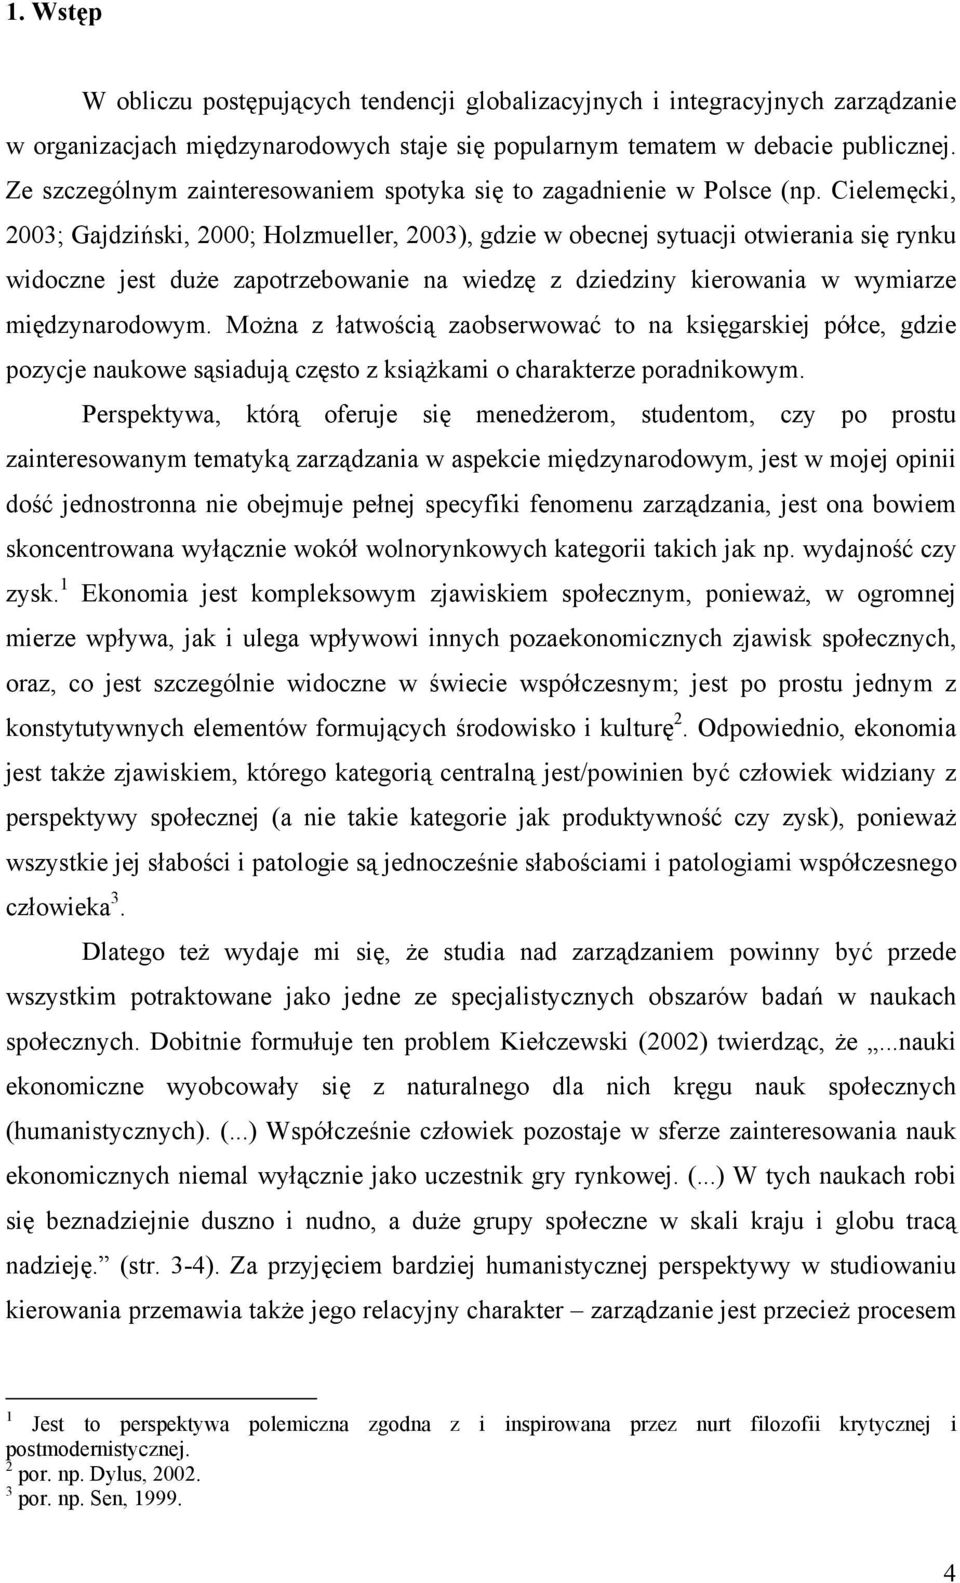 Cielemęcki, 2003; Gajdziński, 2000; Holzmueller, 2003), gdzie w obecnej sytuacji otwierania się rynku widoczne jest duże zapotrzebowanie na wiedzę z dziedziny kierowania w wymiarze międzynarodowym.